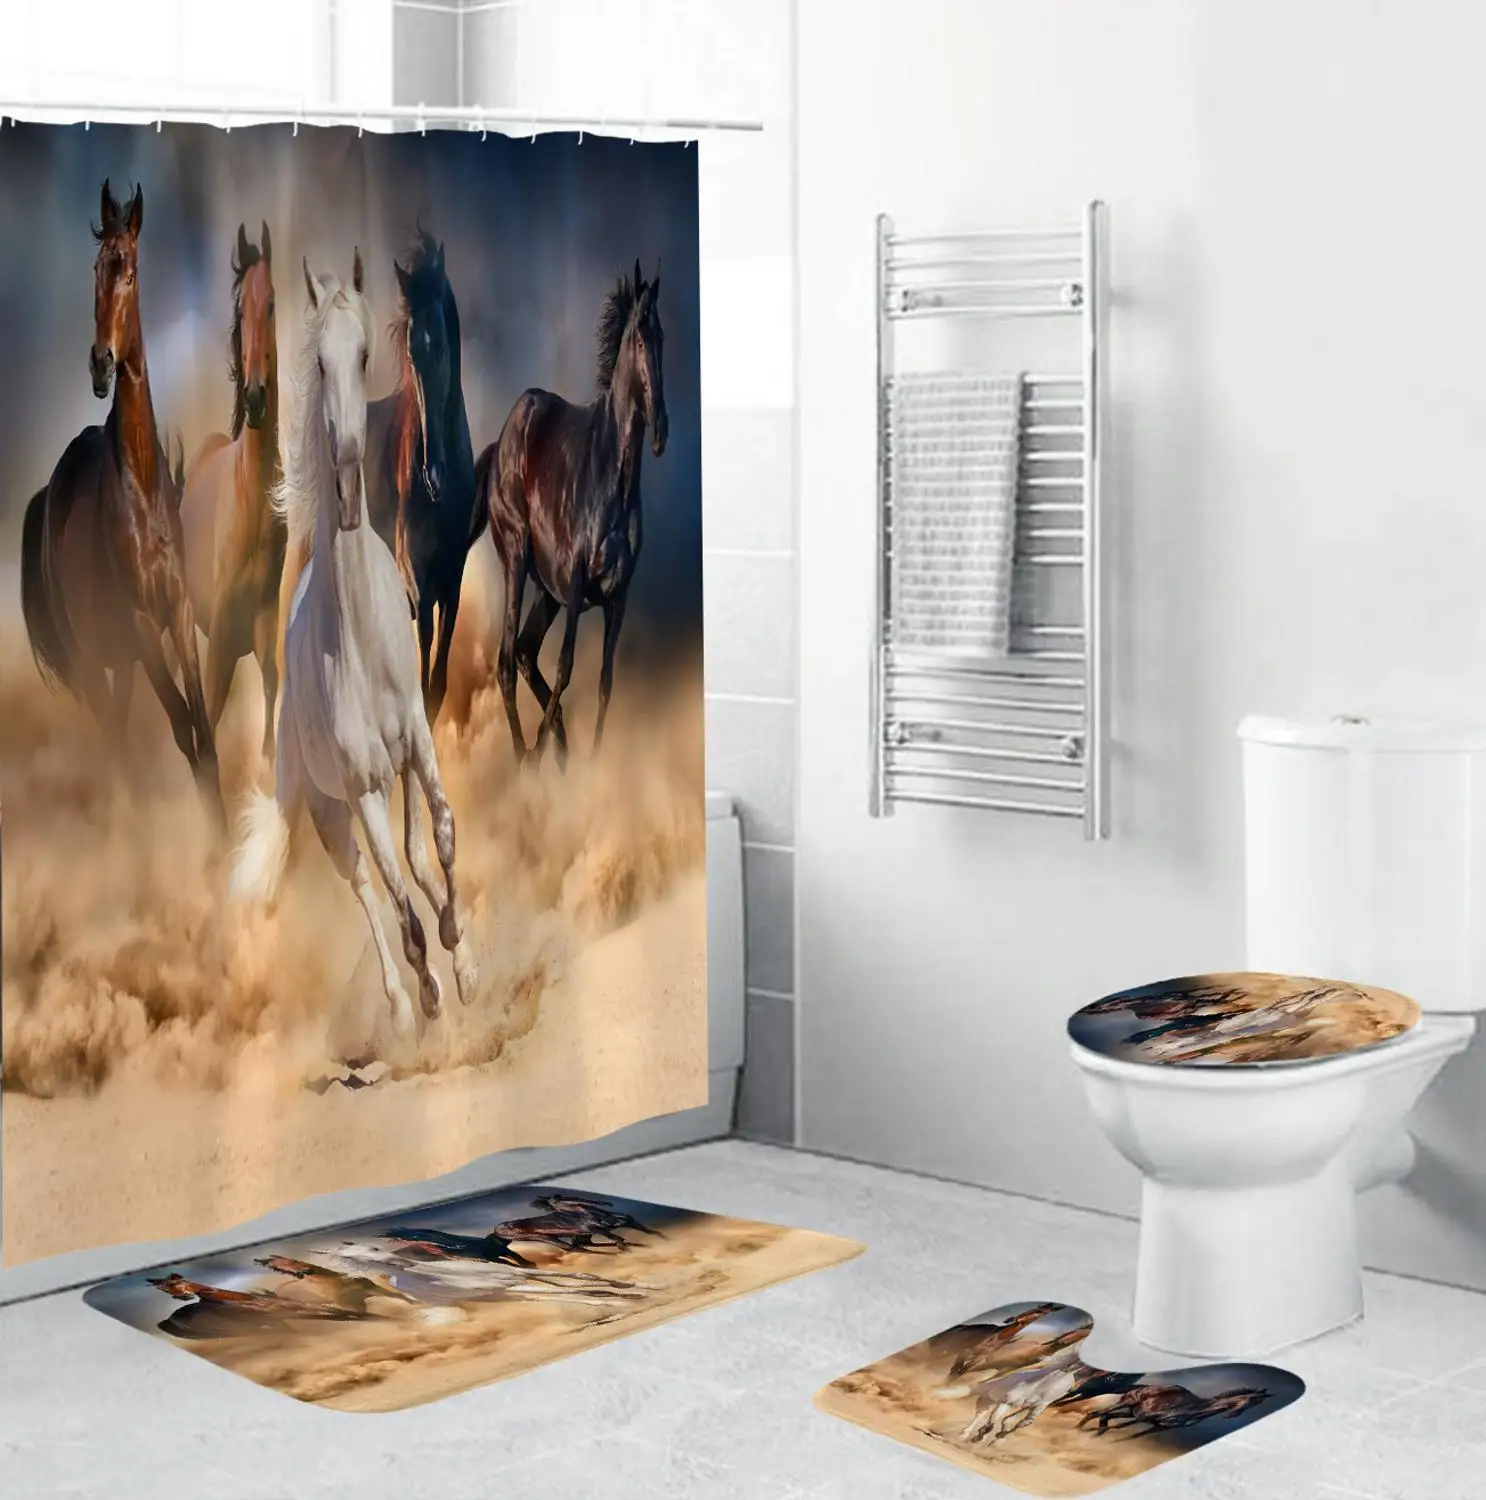 

4 шт. с принтом лошади для душа из полиэстера Шторы ковровое покрытие Туалет чехол для губ коврик для ванной комплект Животные Ванная комнат...